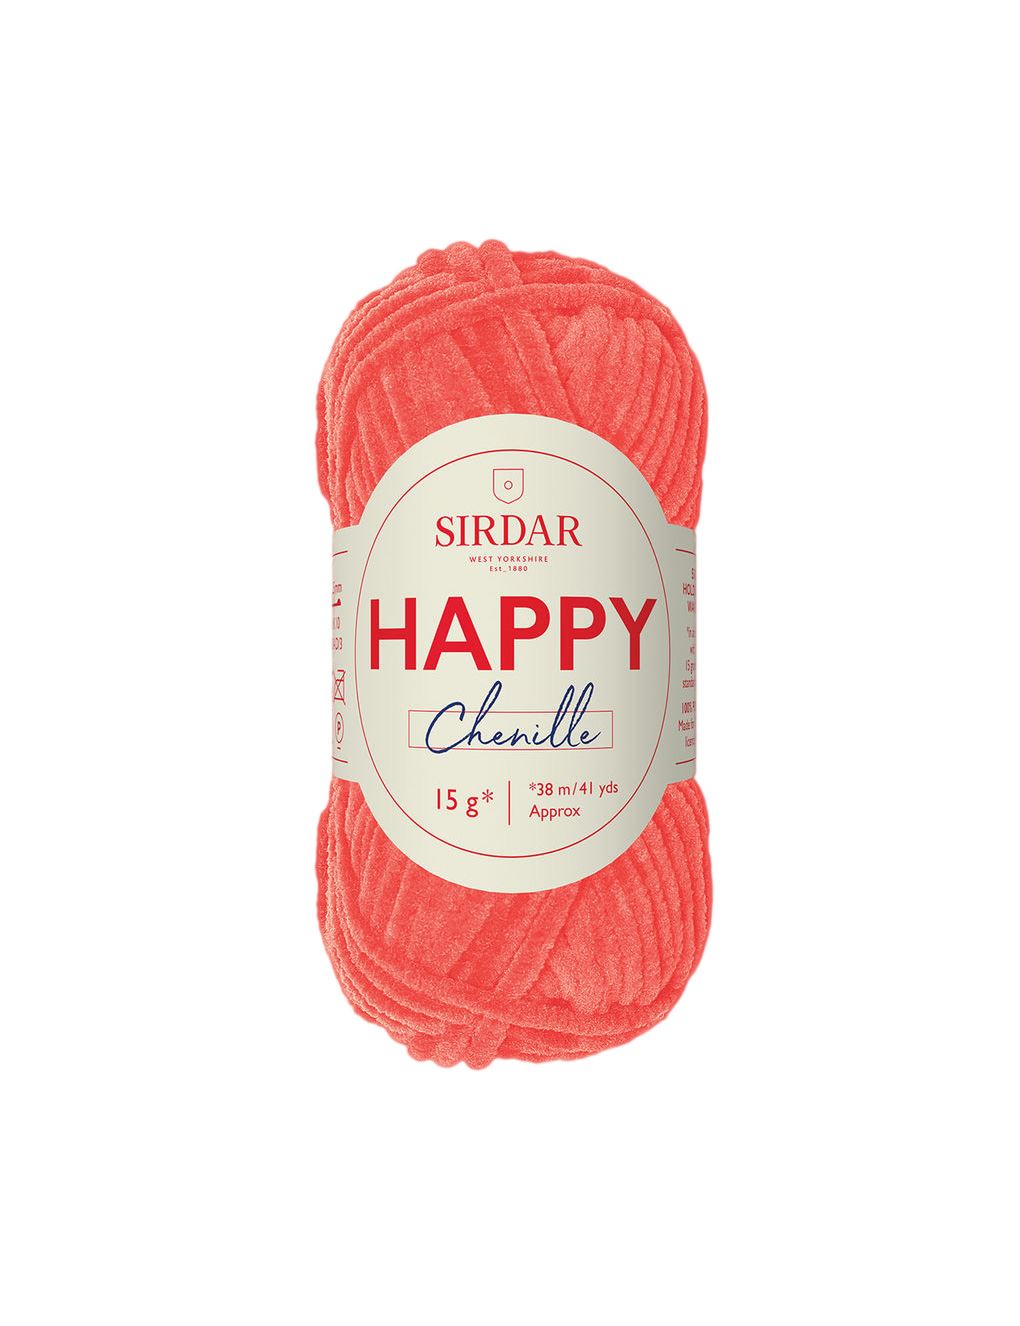 Sirdar Happy Chenille Tutti Frutti (032) yarn - 15g